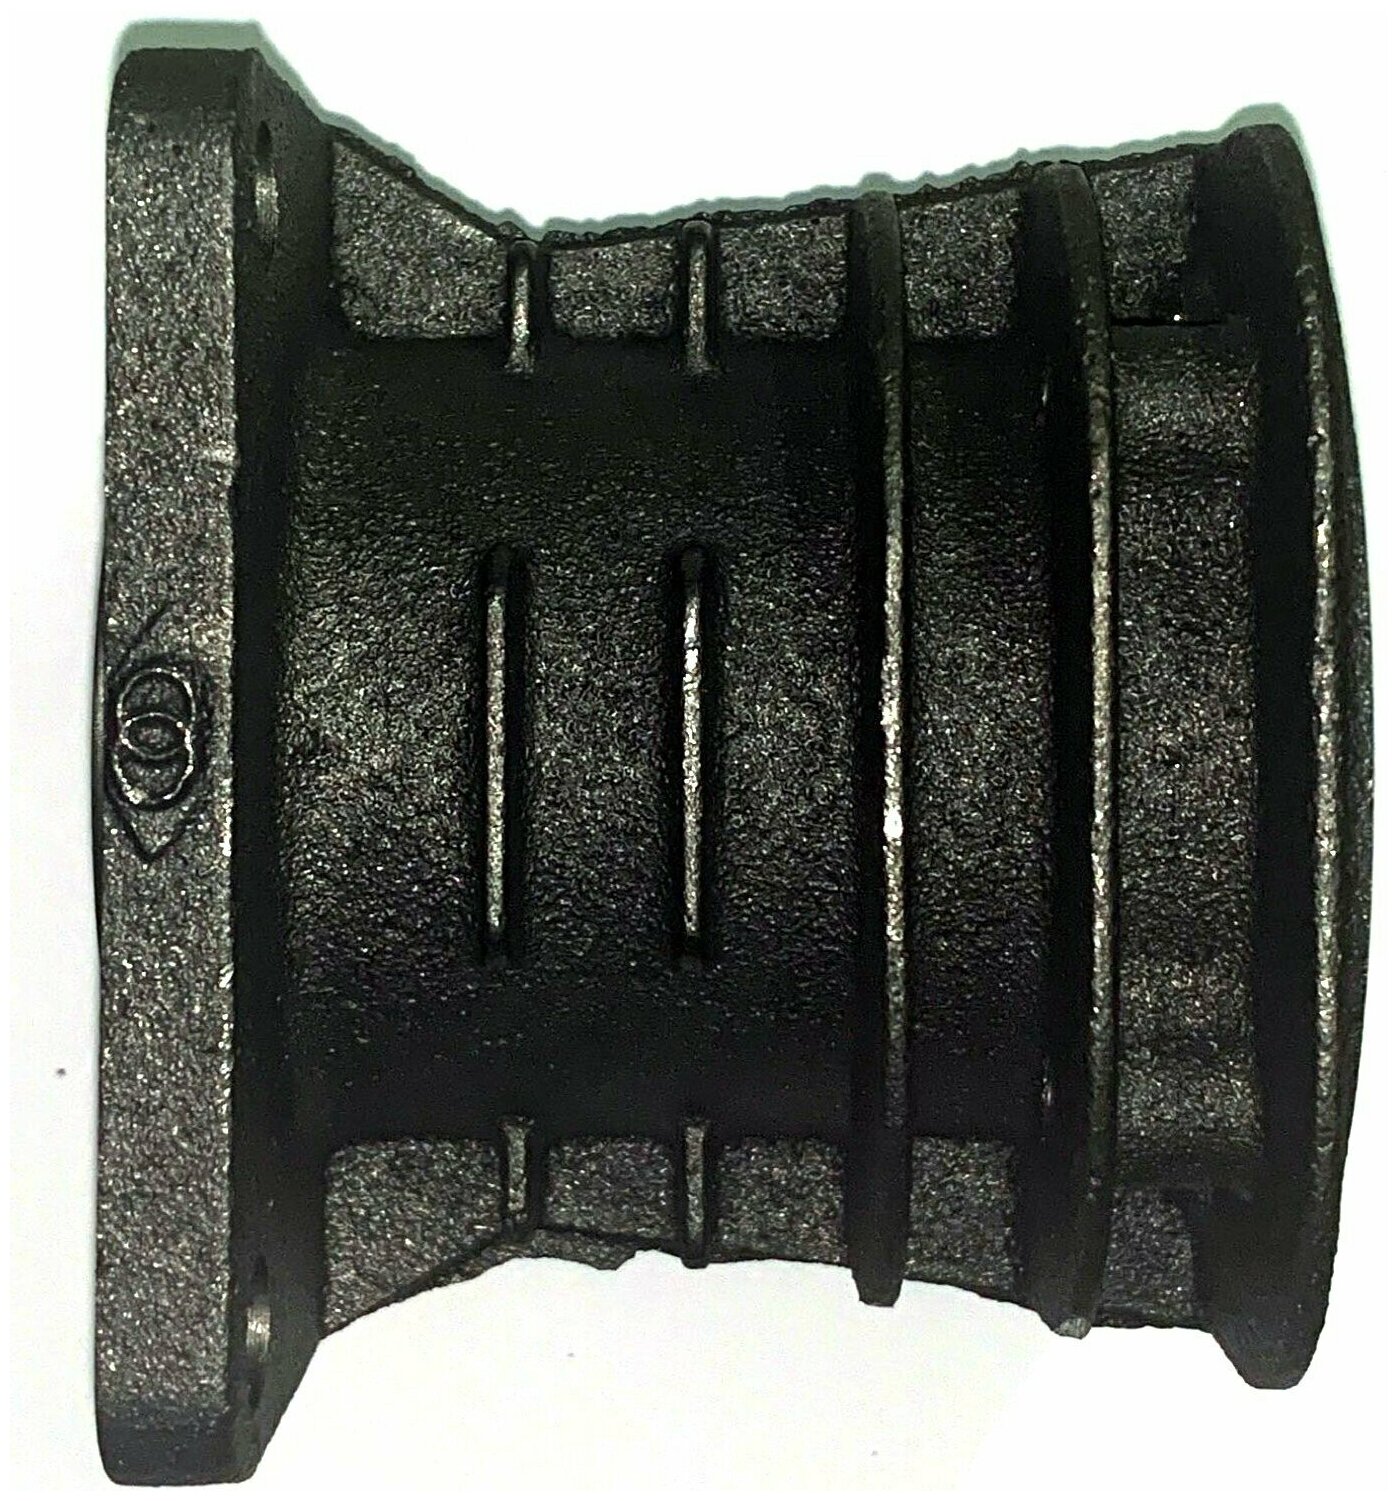 Цилиндр для компрессора поршневого, масляного (высота - 80 мм, диаметр - 51 мм) - фотография № 5